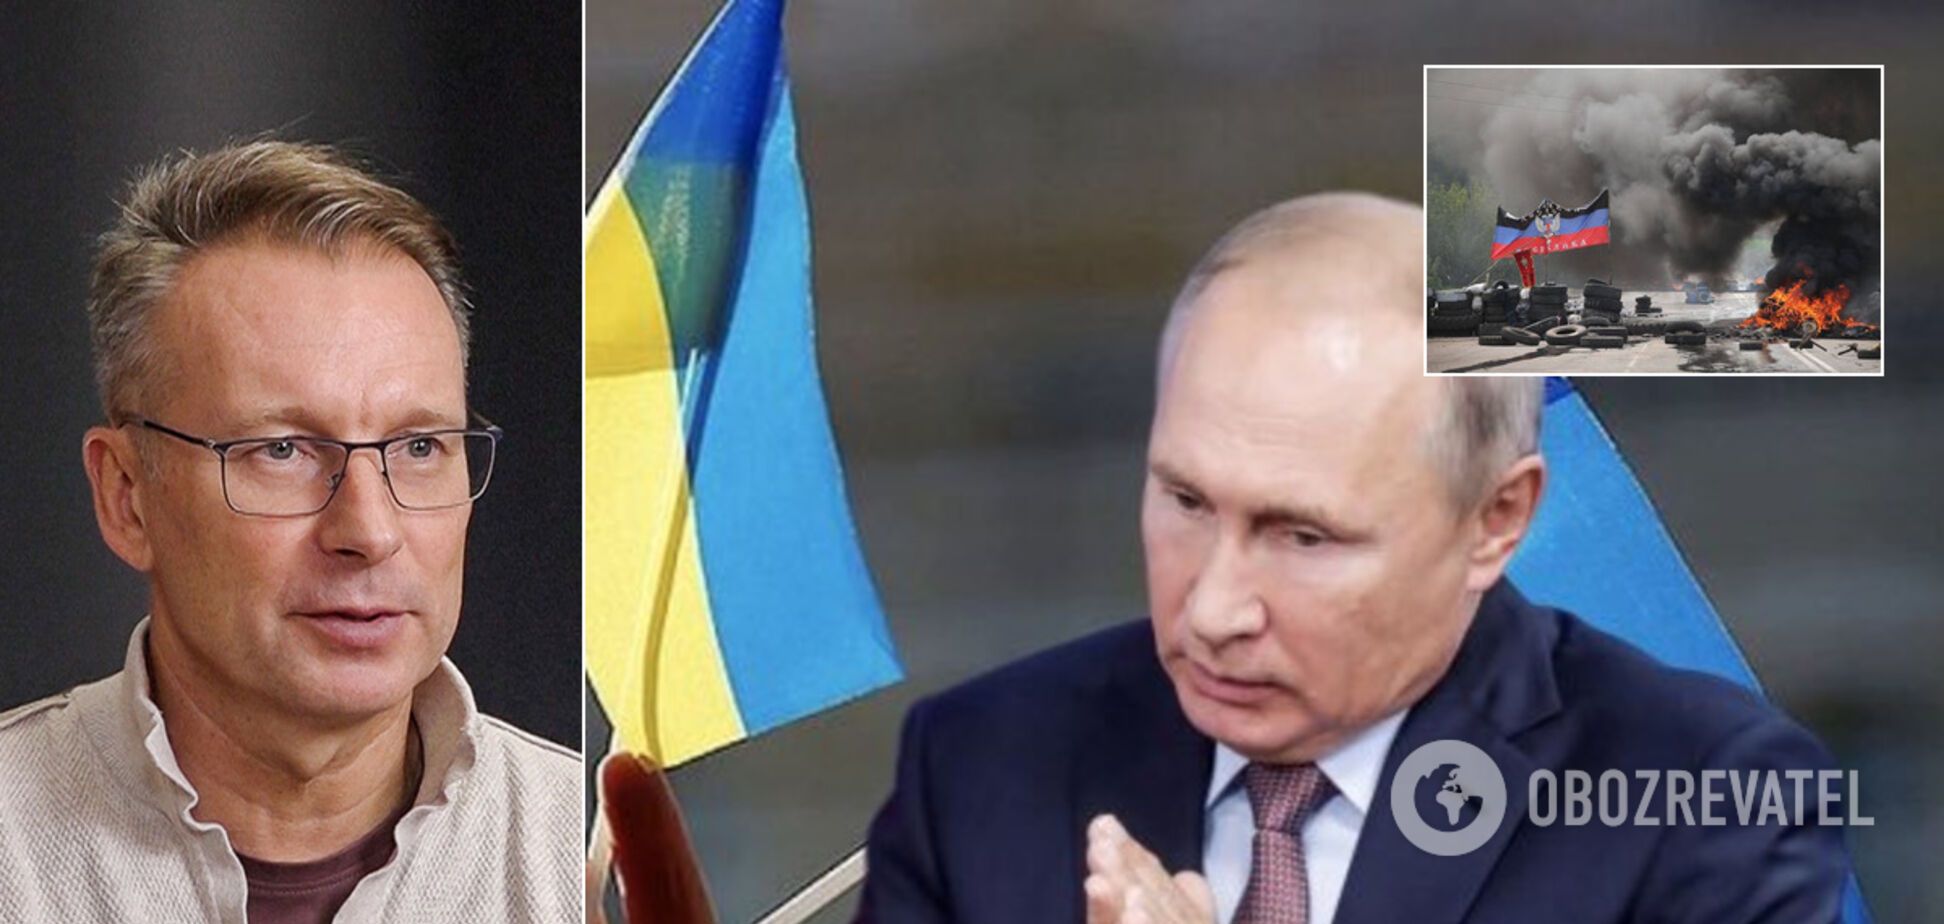 Путін хотів захопити 9 областей України: дипломат сказав навіщо